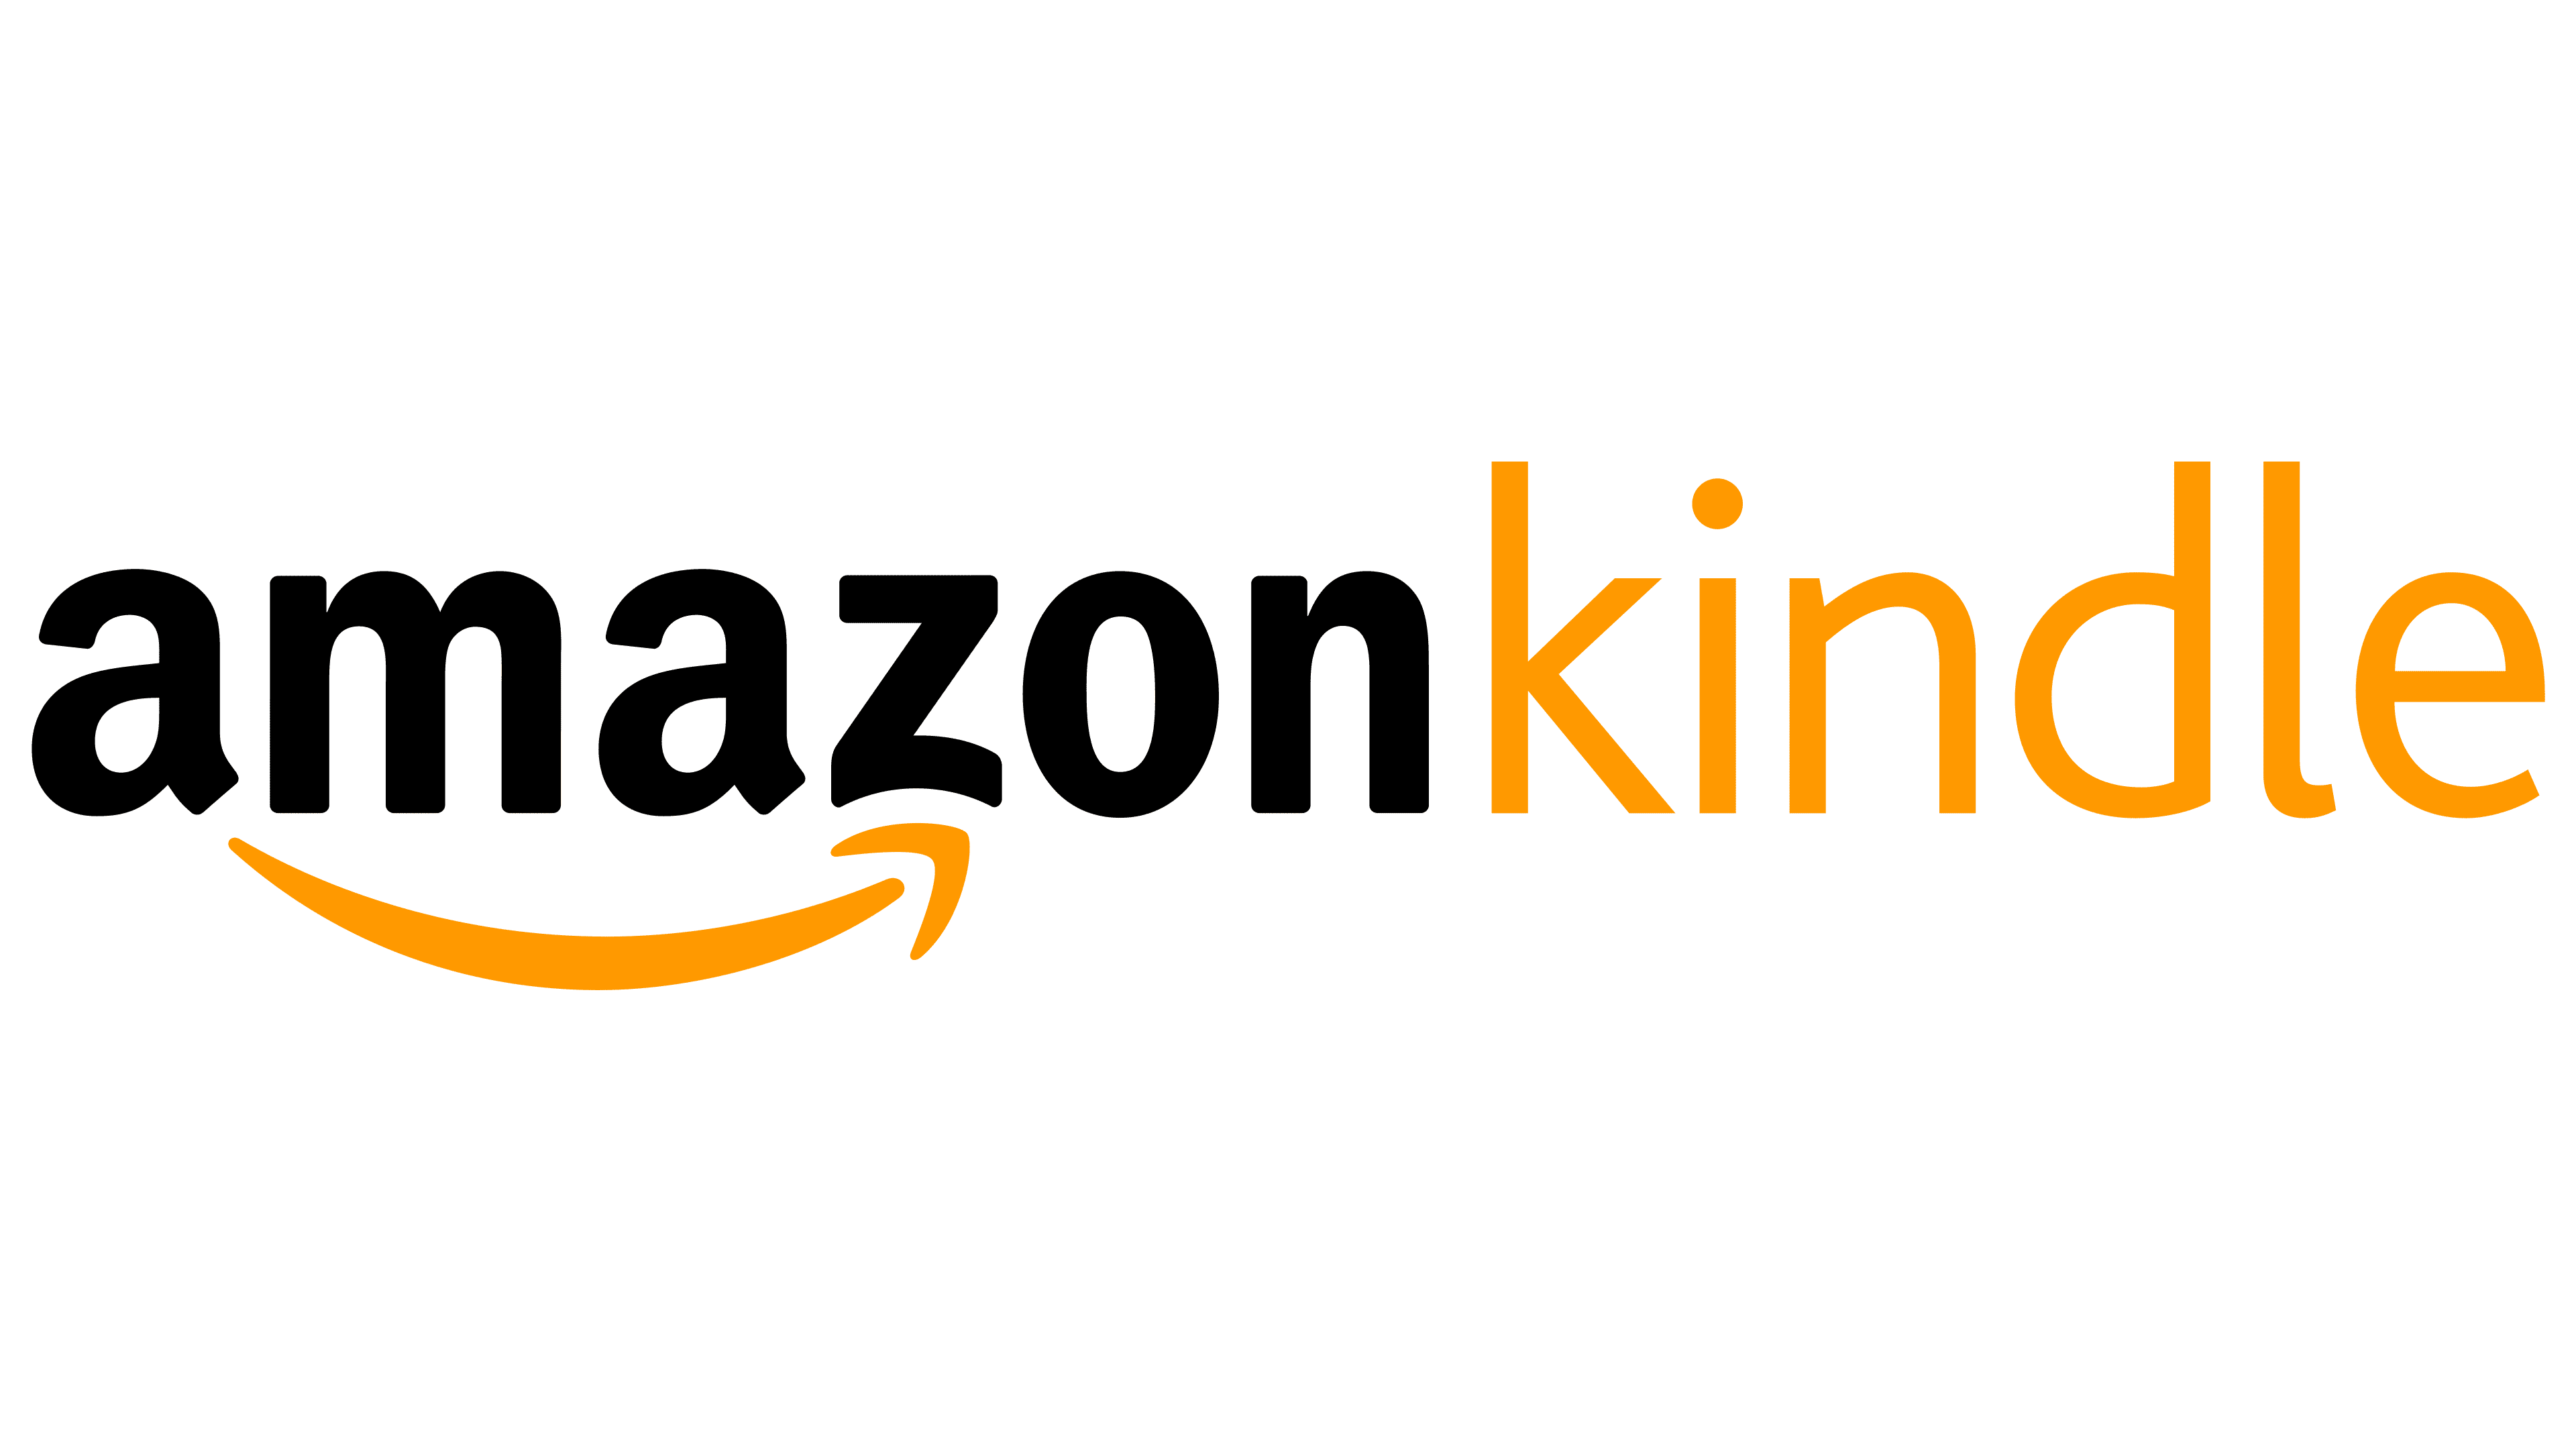 Logo Amazon Kindle chứa đựng ý nghĩa sâu sắc cả về lịch sử và thương hiệu của Amazon. Nếu bạn quan tâm đến logo và hình ảnh liên quan, thì hãy xem ngay để có thể tìm hiểu nhiều hơn về sản phẩm này!